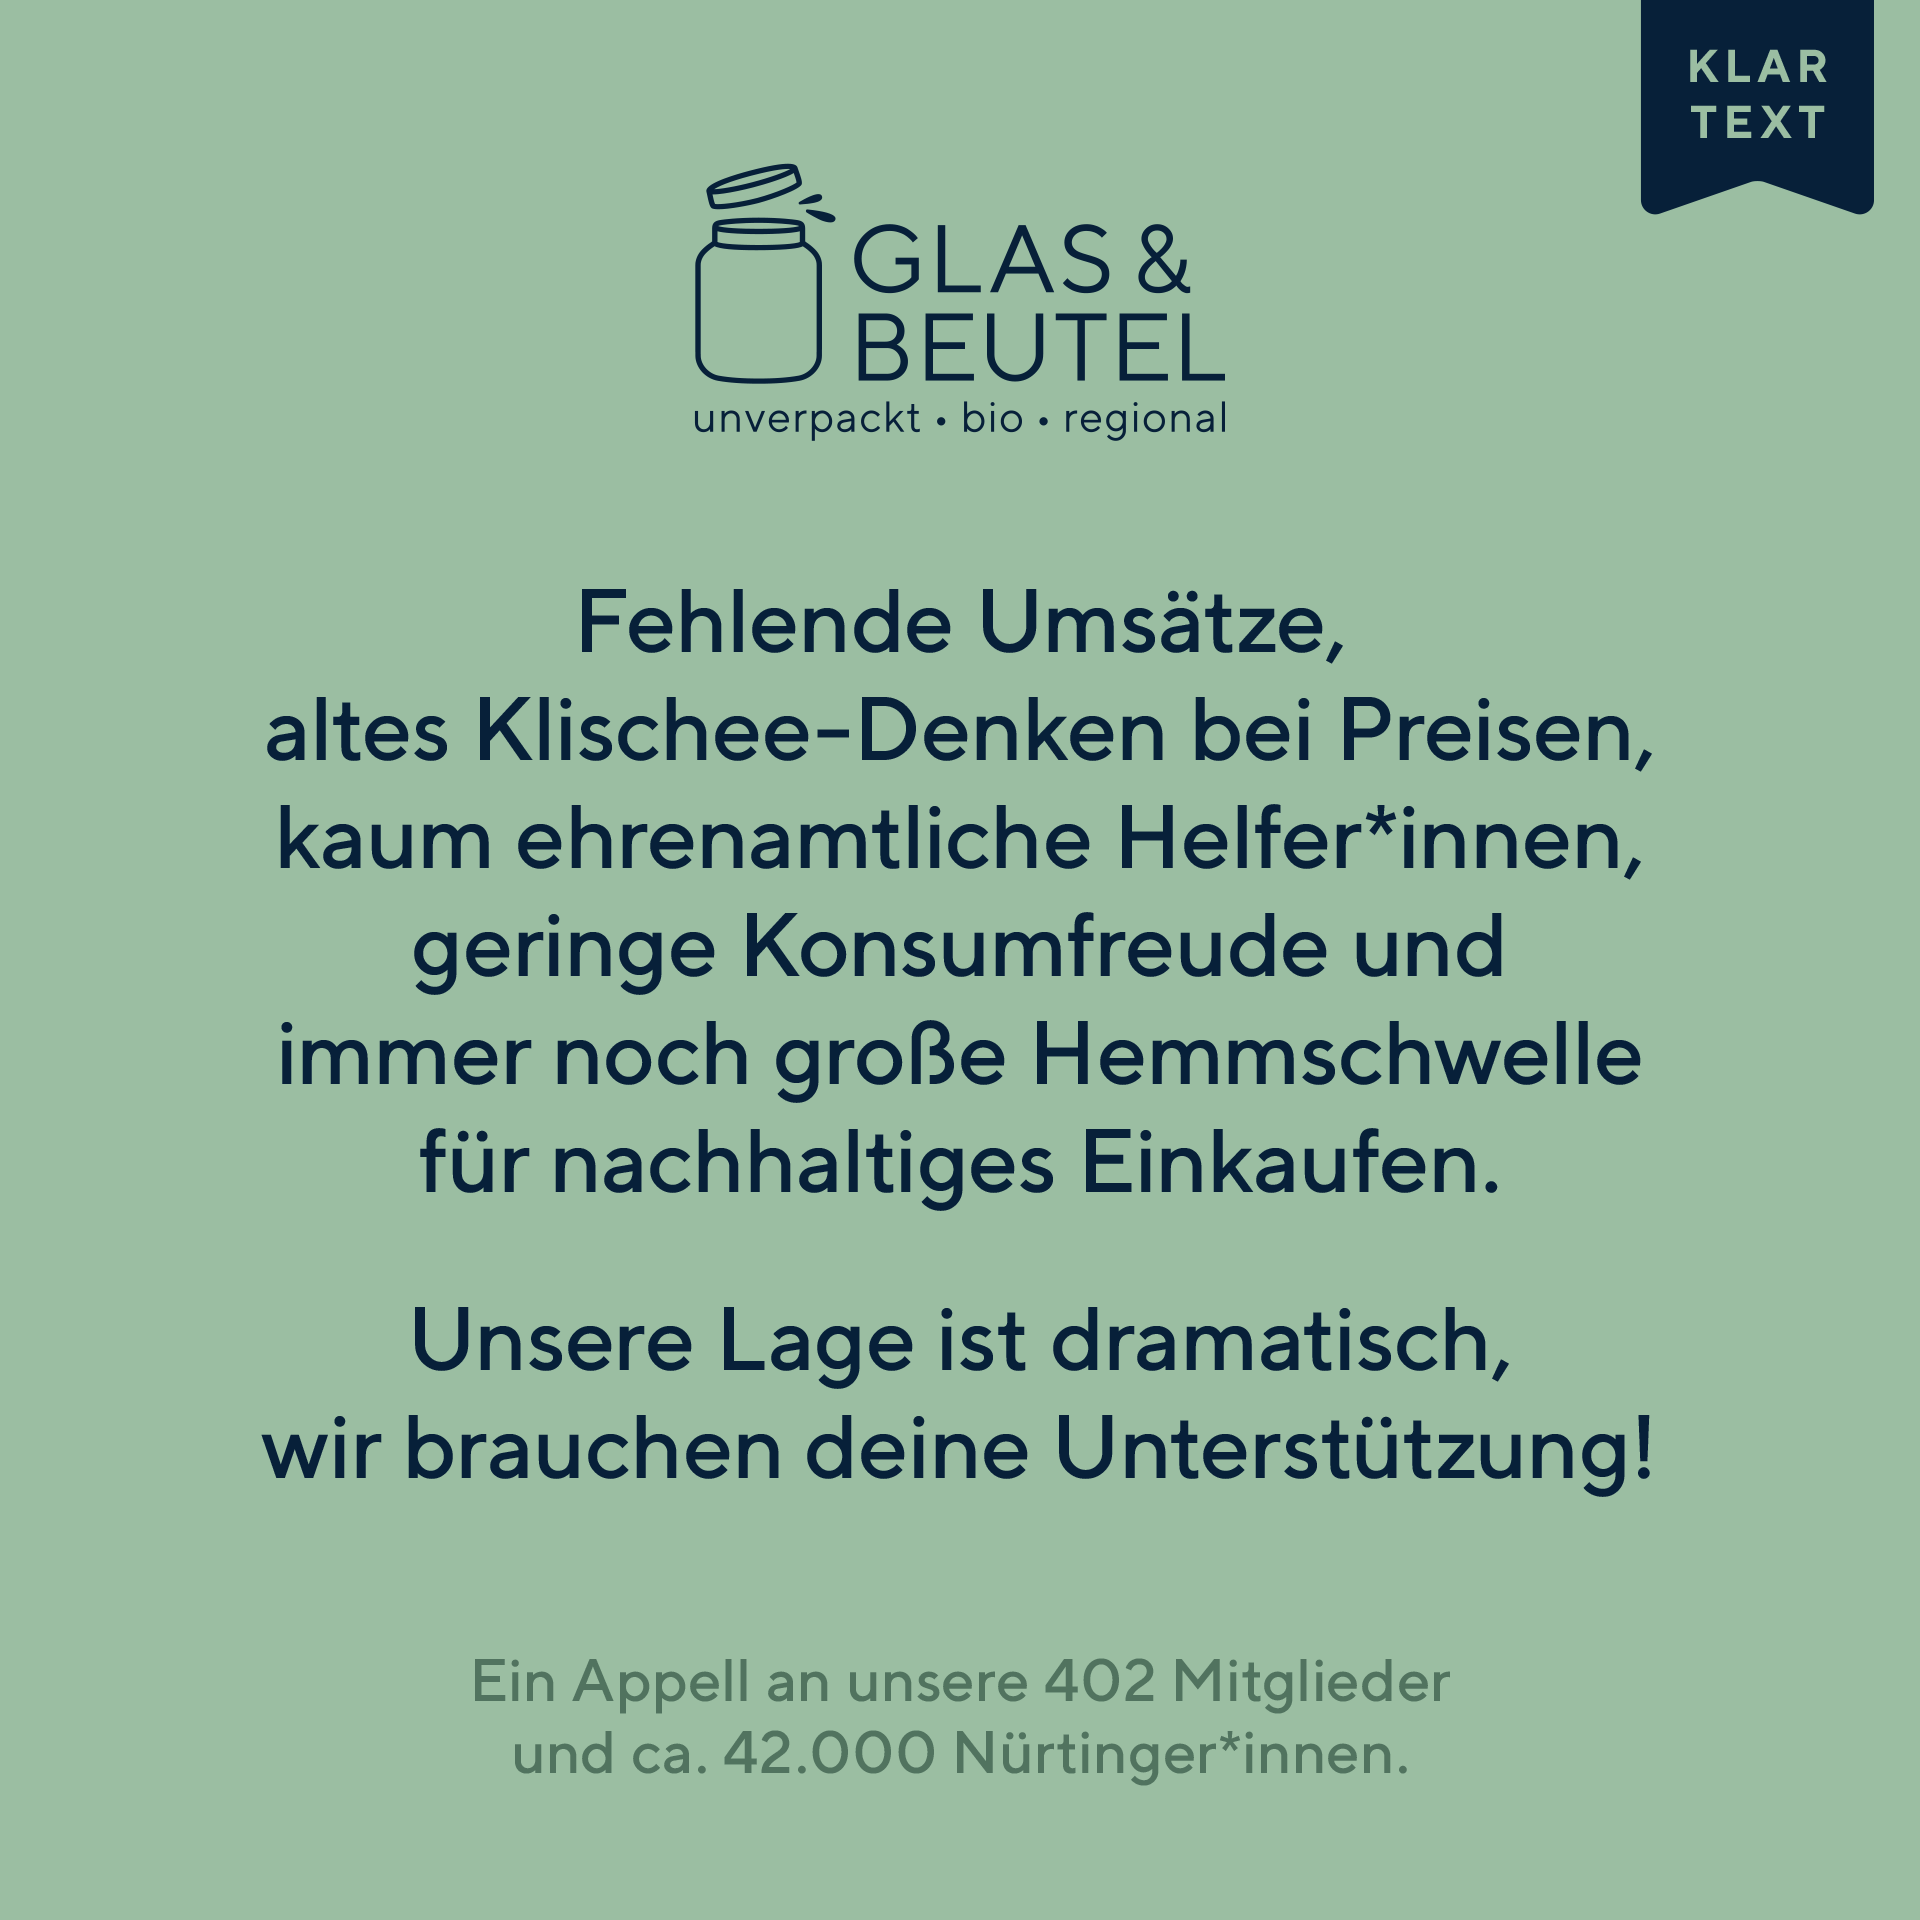 Glas & Beutel | Unverpackt-Laden in Nürtingen